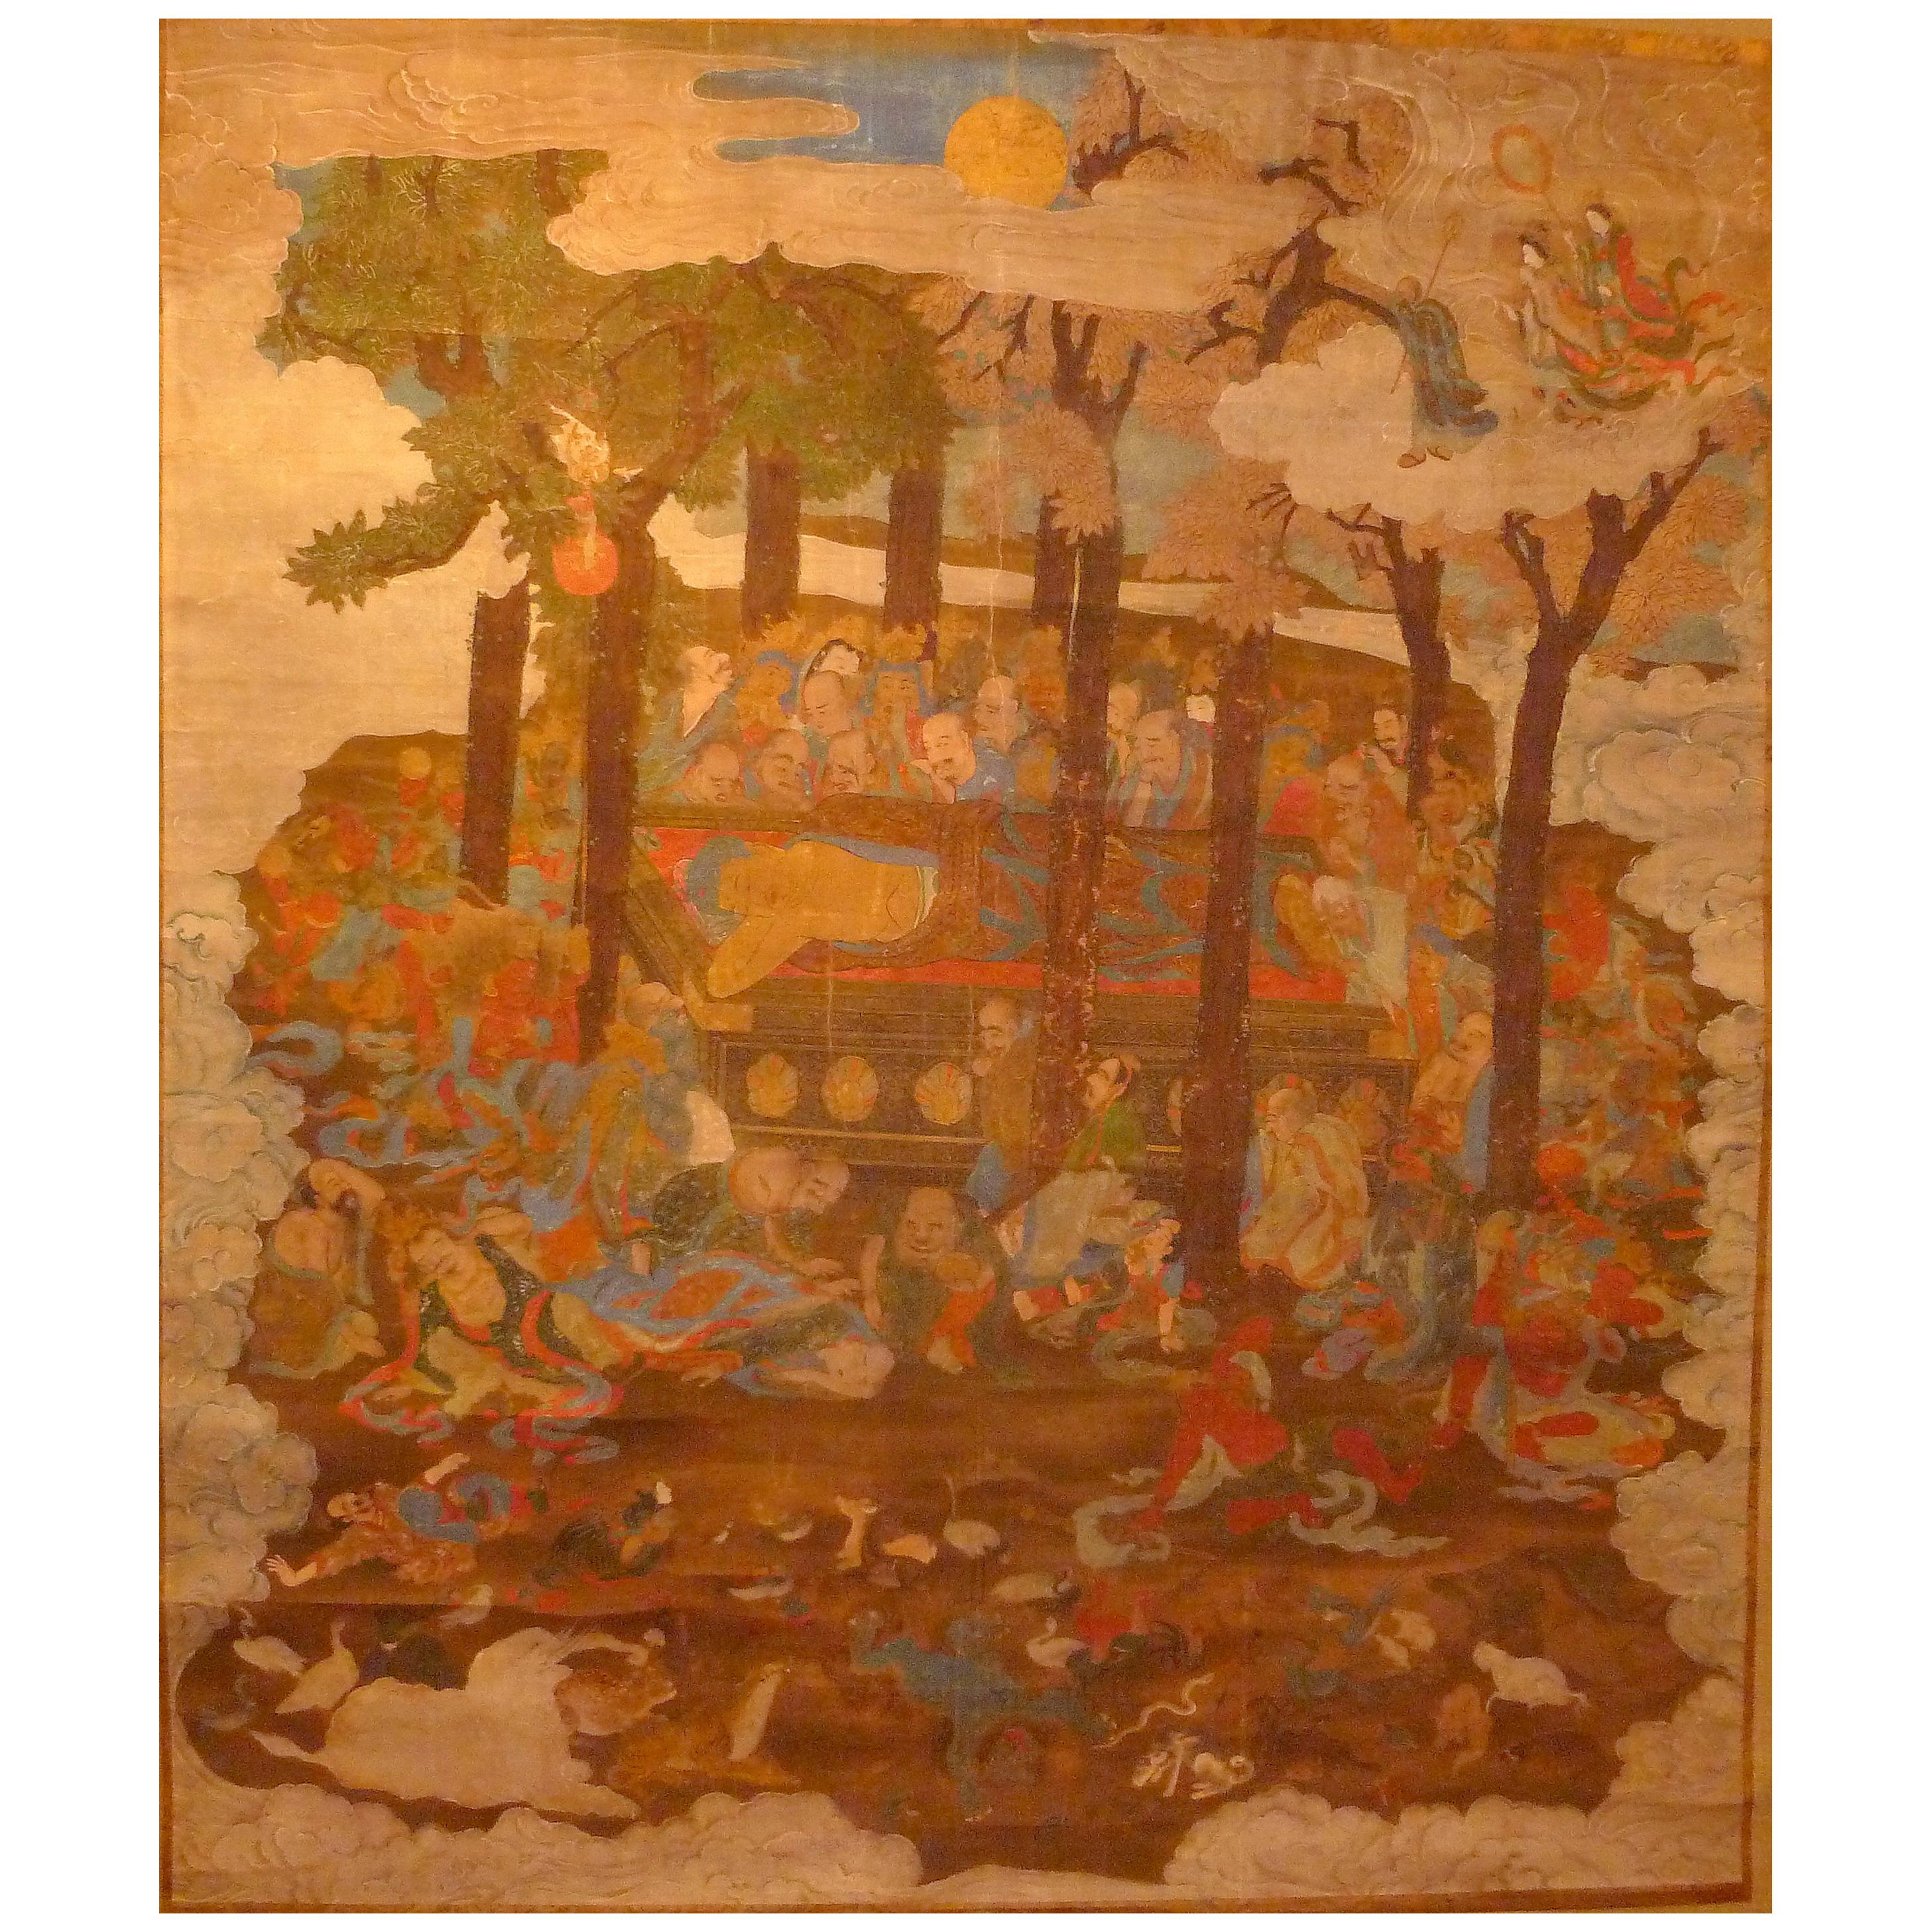 Monumentale et massive peinture japonaise Sakyamuni avec disciples bouddhistes